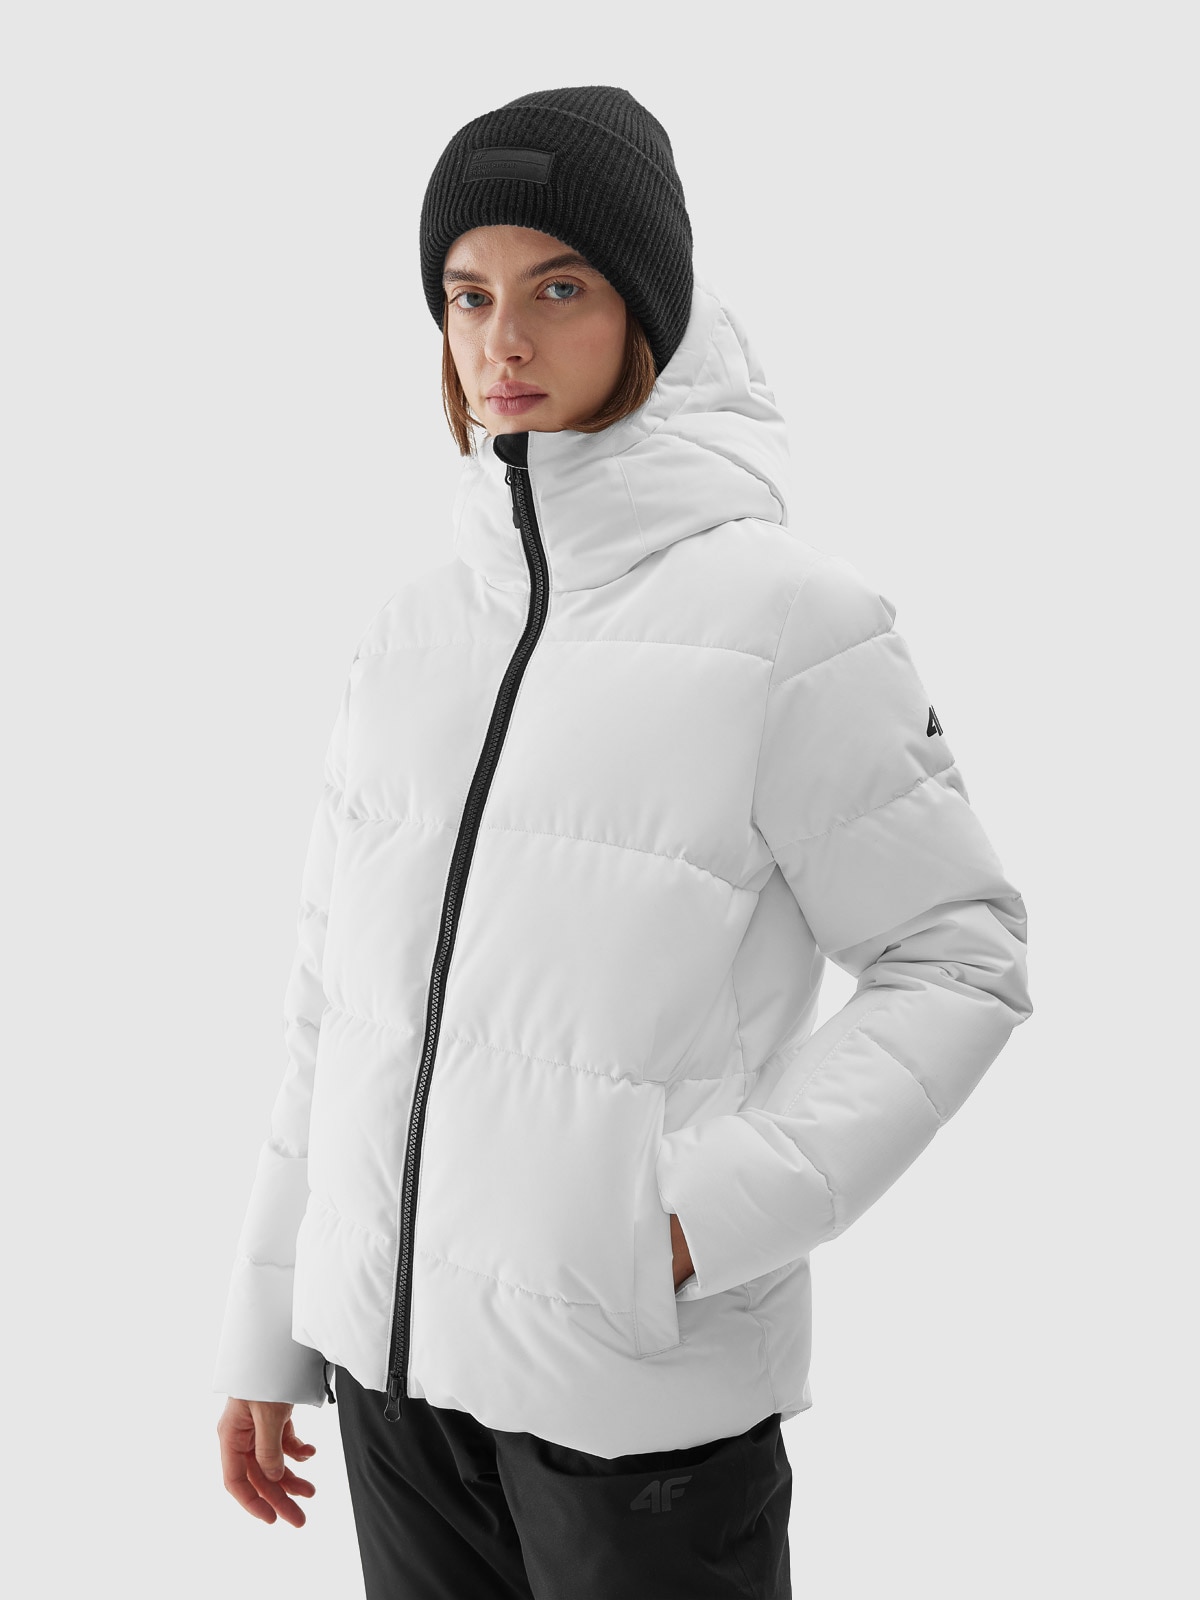 Dámska lyžiarska zatepľovacia bunda s membránou 5000 - biela